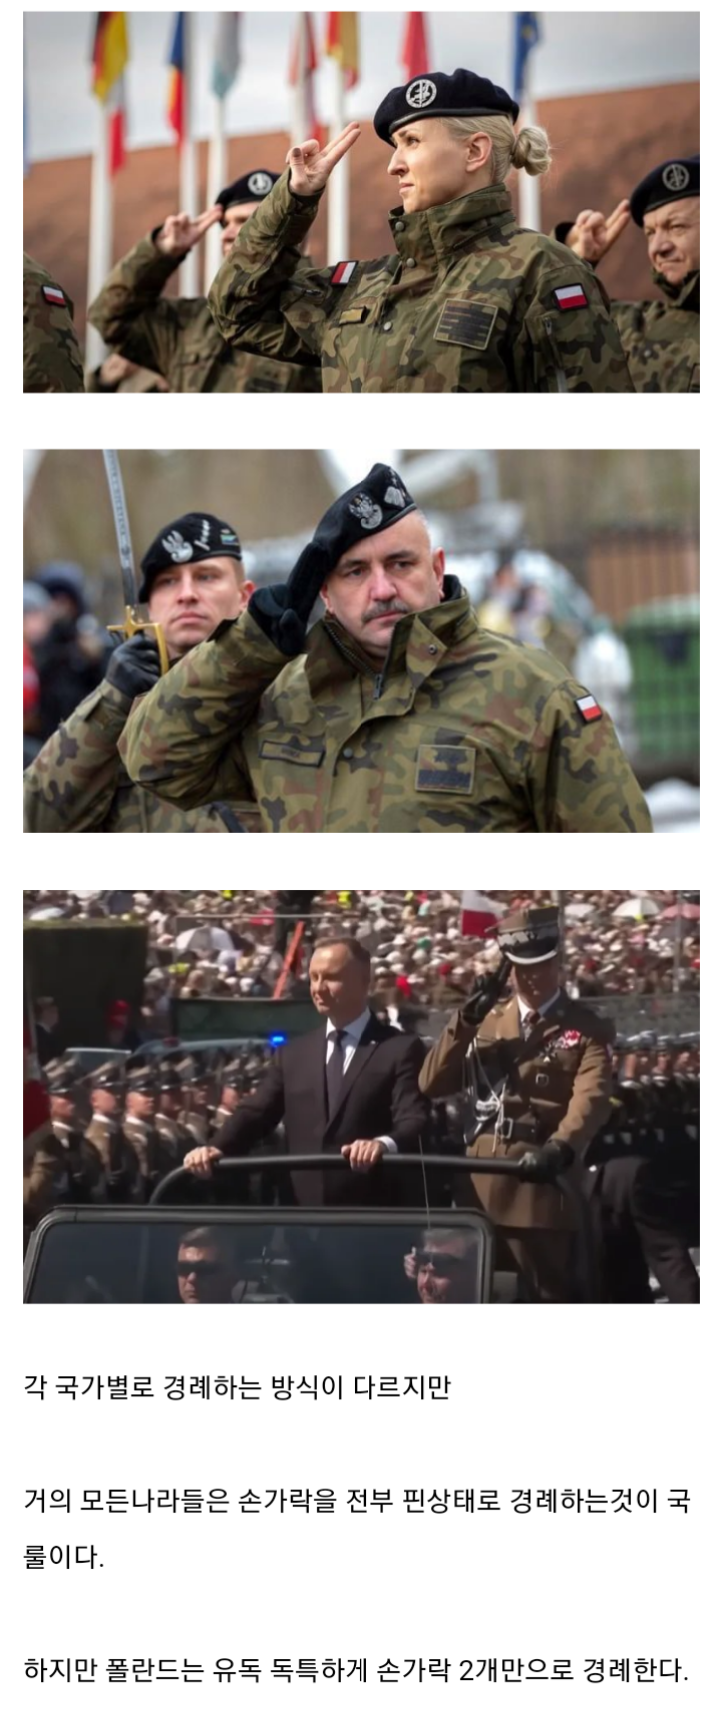 폴란드 군인이 두손가락 경례 하는 이유